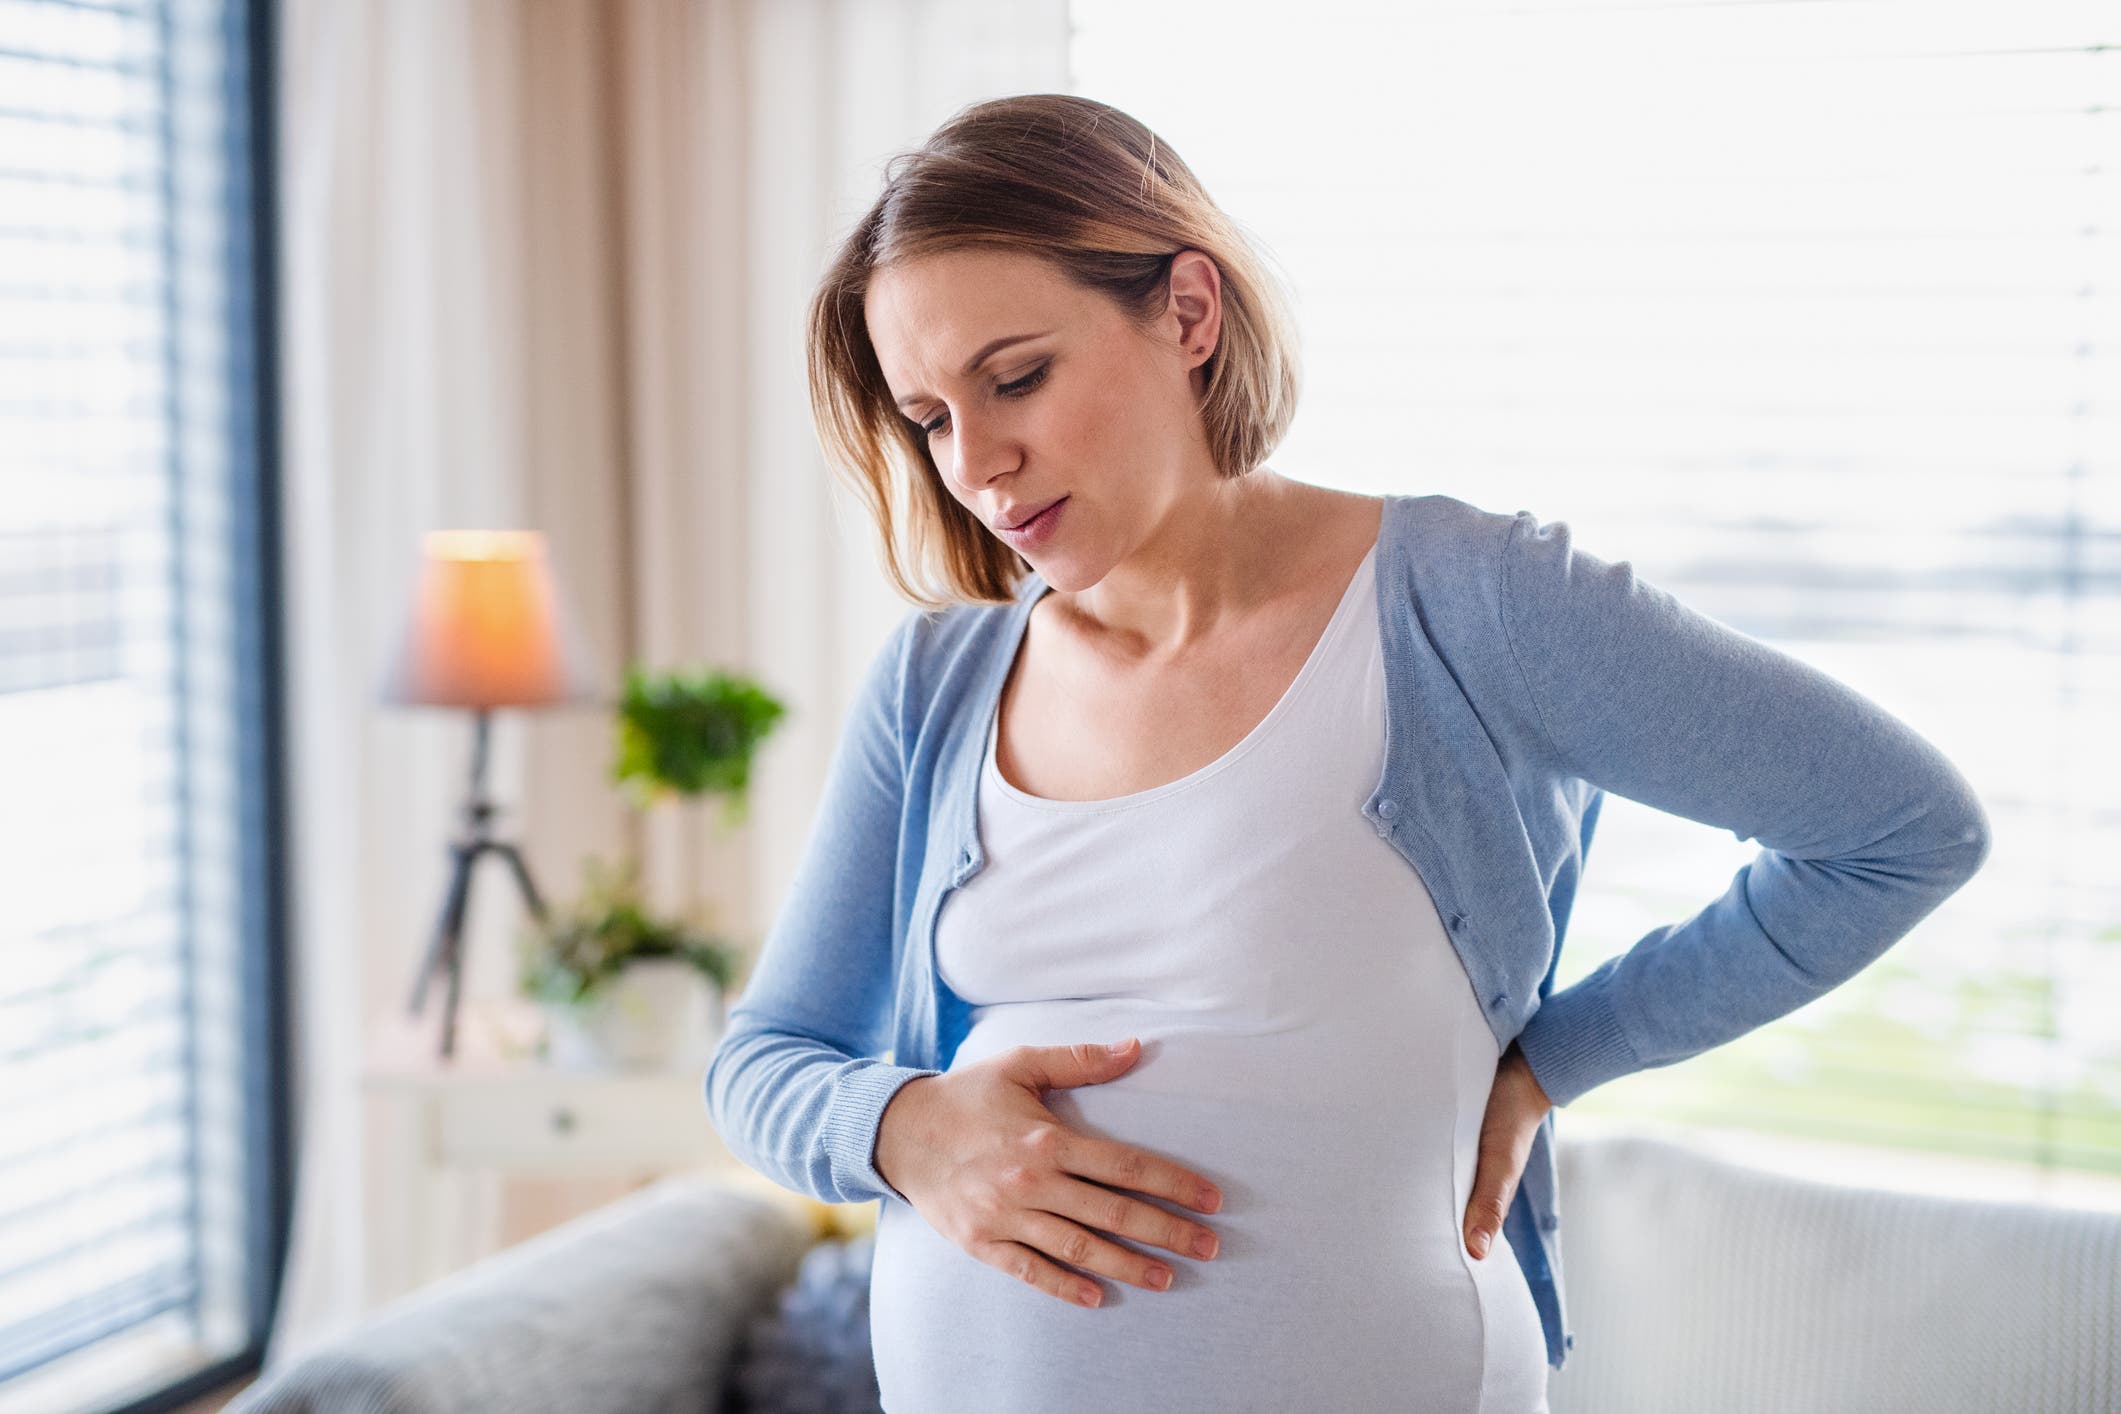 اختبار بسيط يحدد النساء المعرضات لخطر “تسمم الحمل”